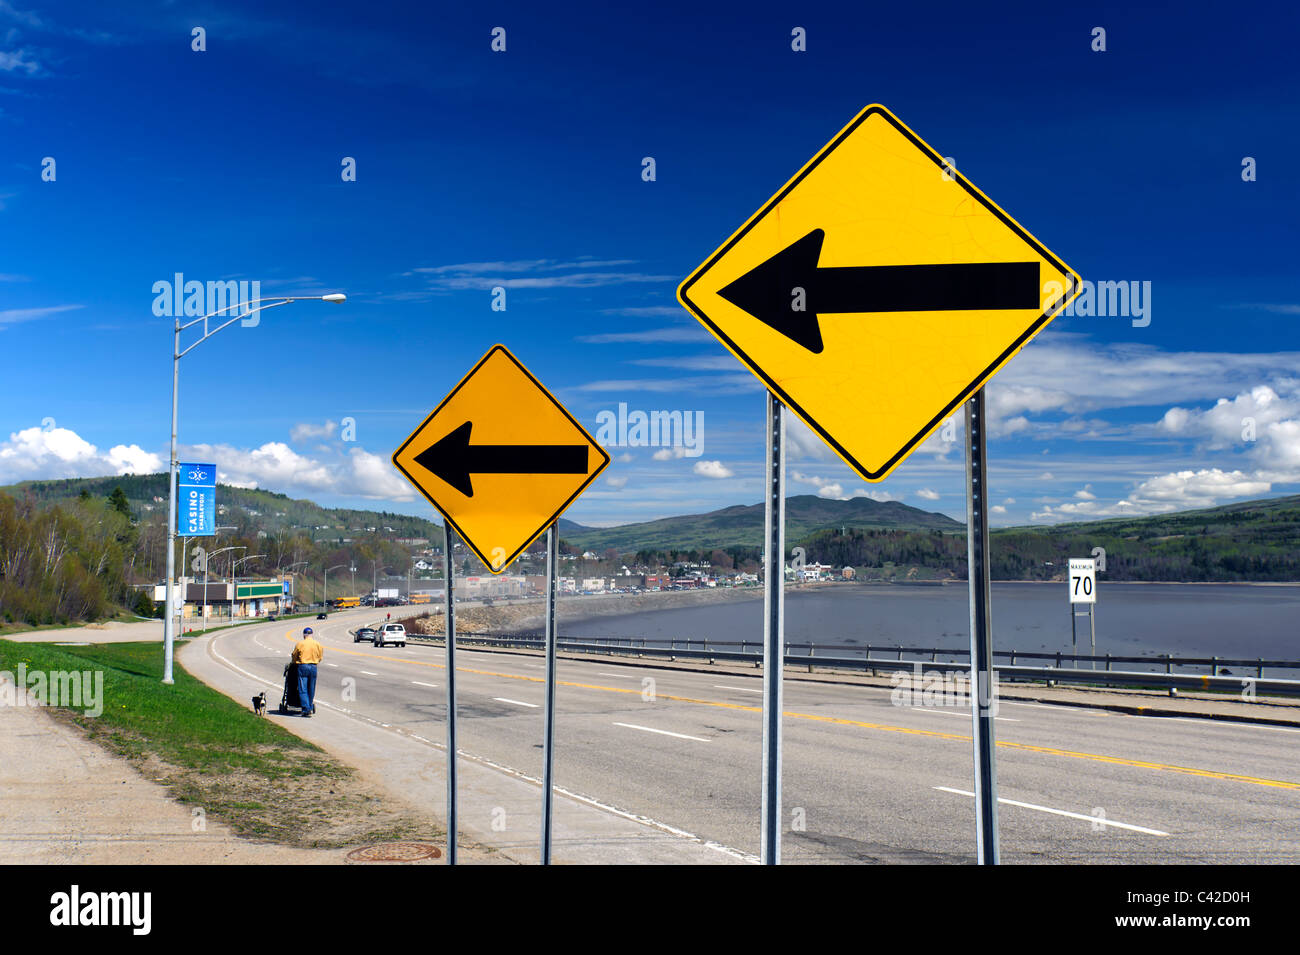 Deux panneaux de signalisation jaune avec des flèches pointant vers la gauche, sur le boulevard de Comporté, La Malbaie, Québec, Canada Banque D'Images